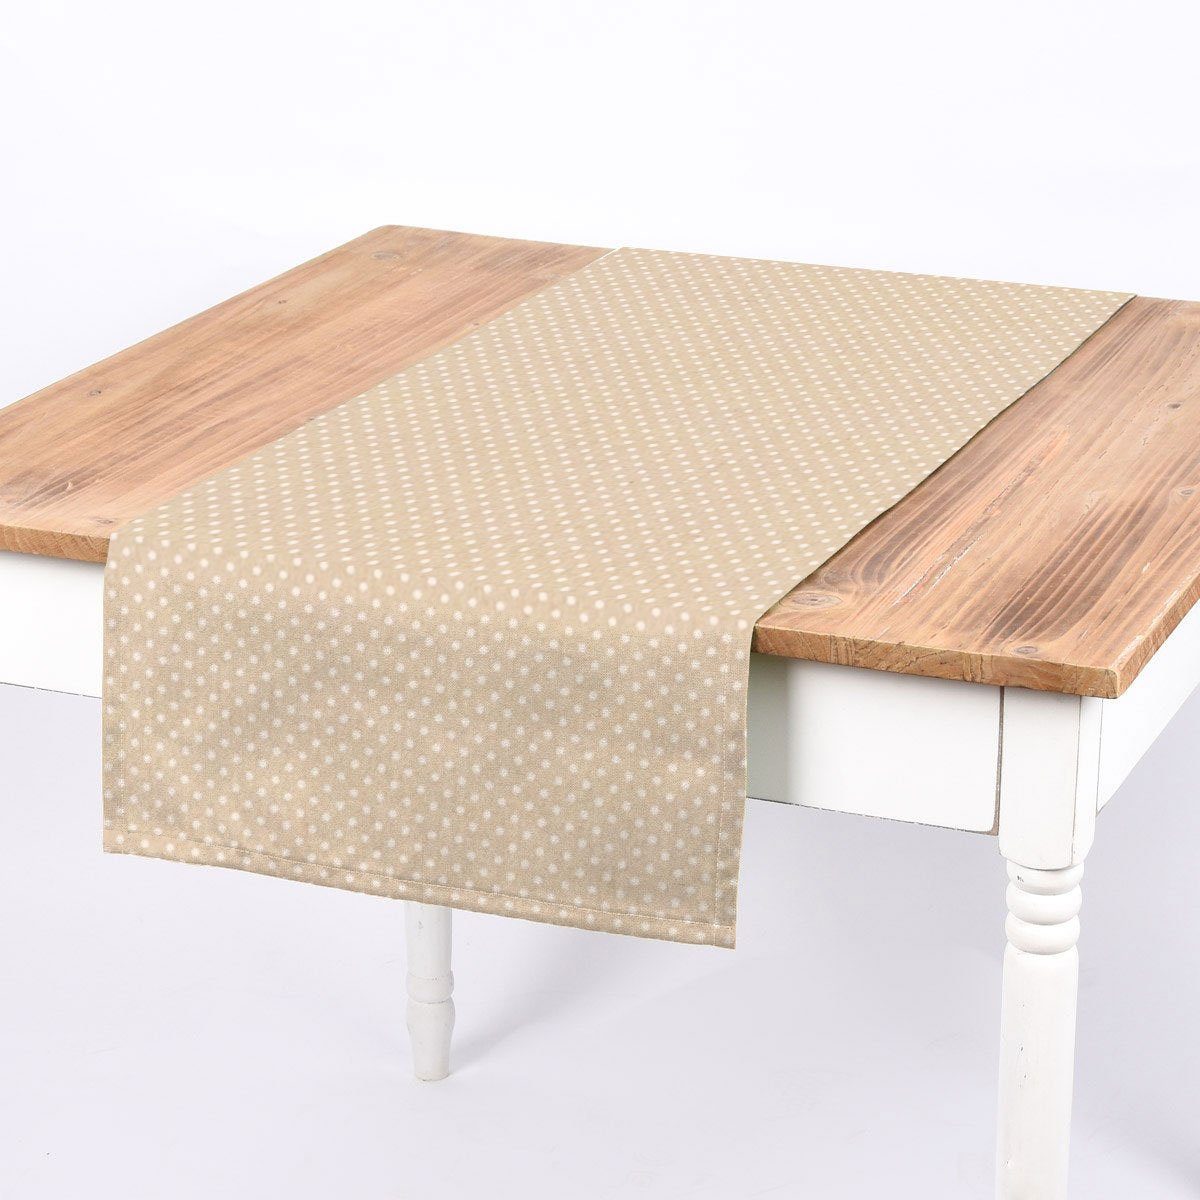 SCHÖNER LEBEN. Tischläufer Tischläufer Leinenlook Basic Dot Pünktchen natur weiß 40x160cm, handmade